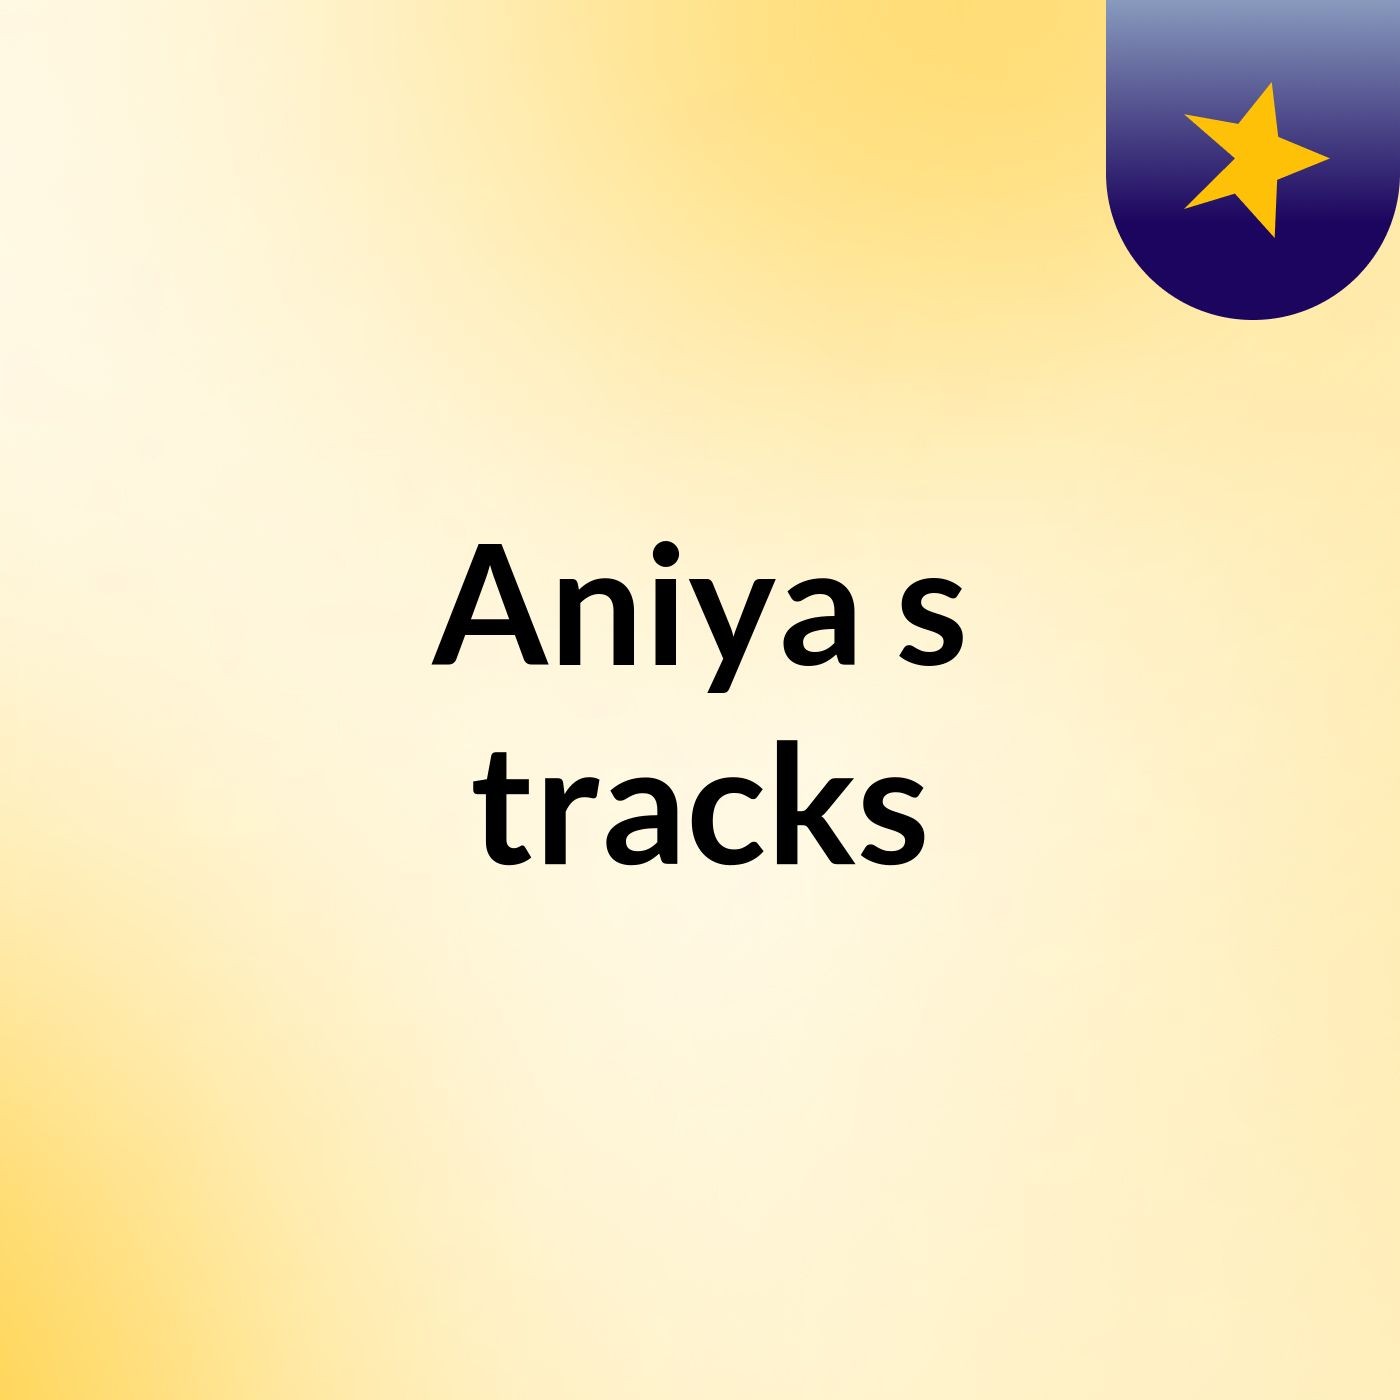 Aniya's tracks